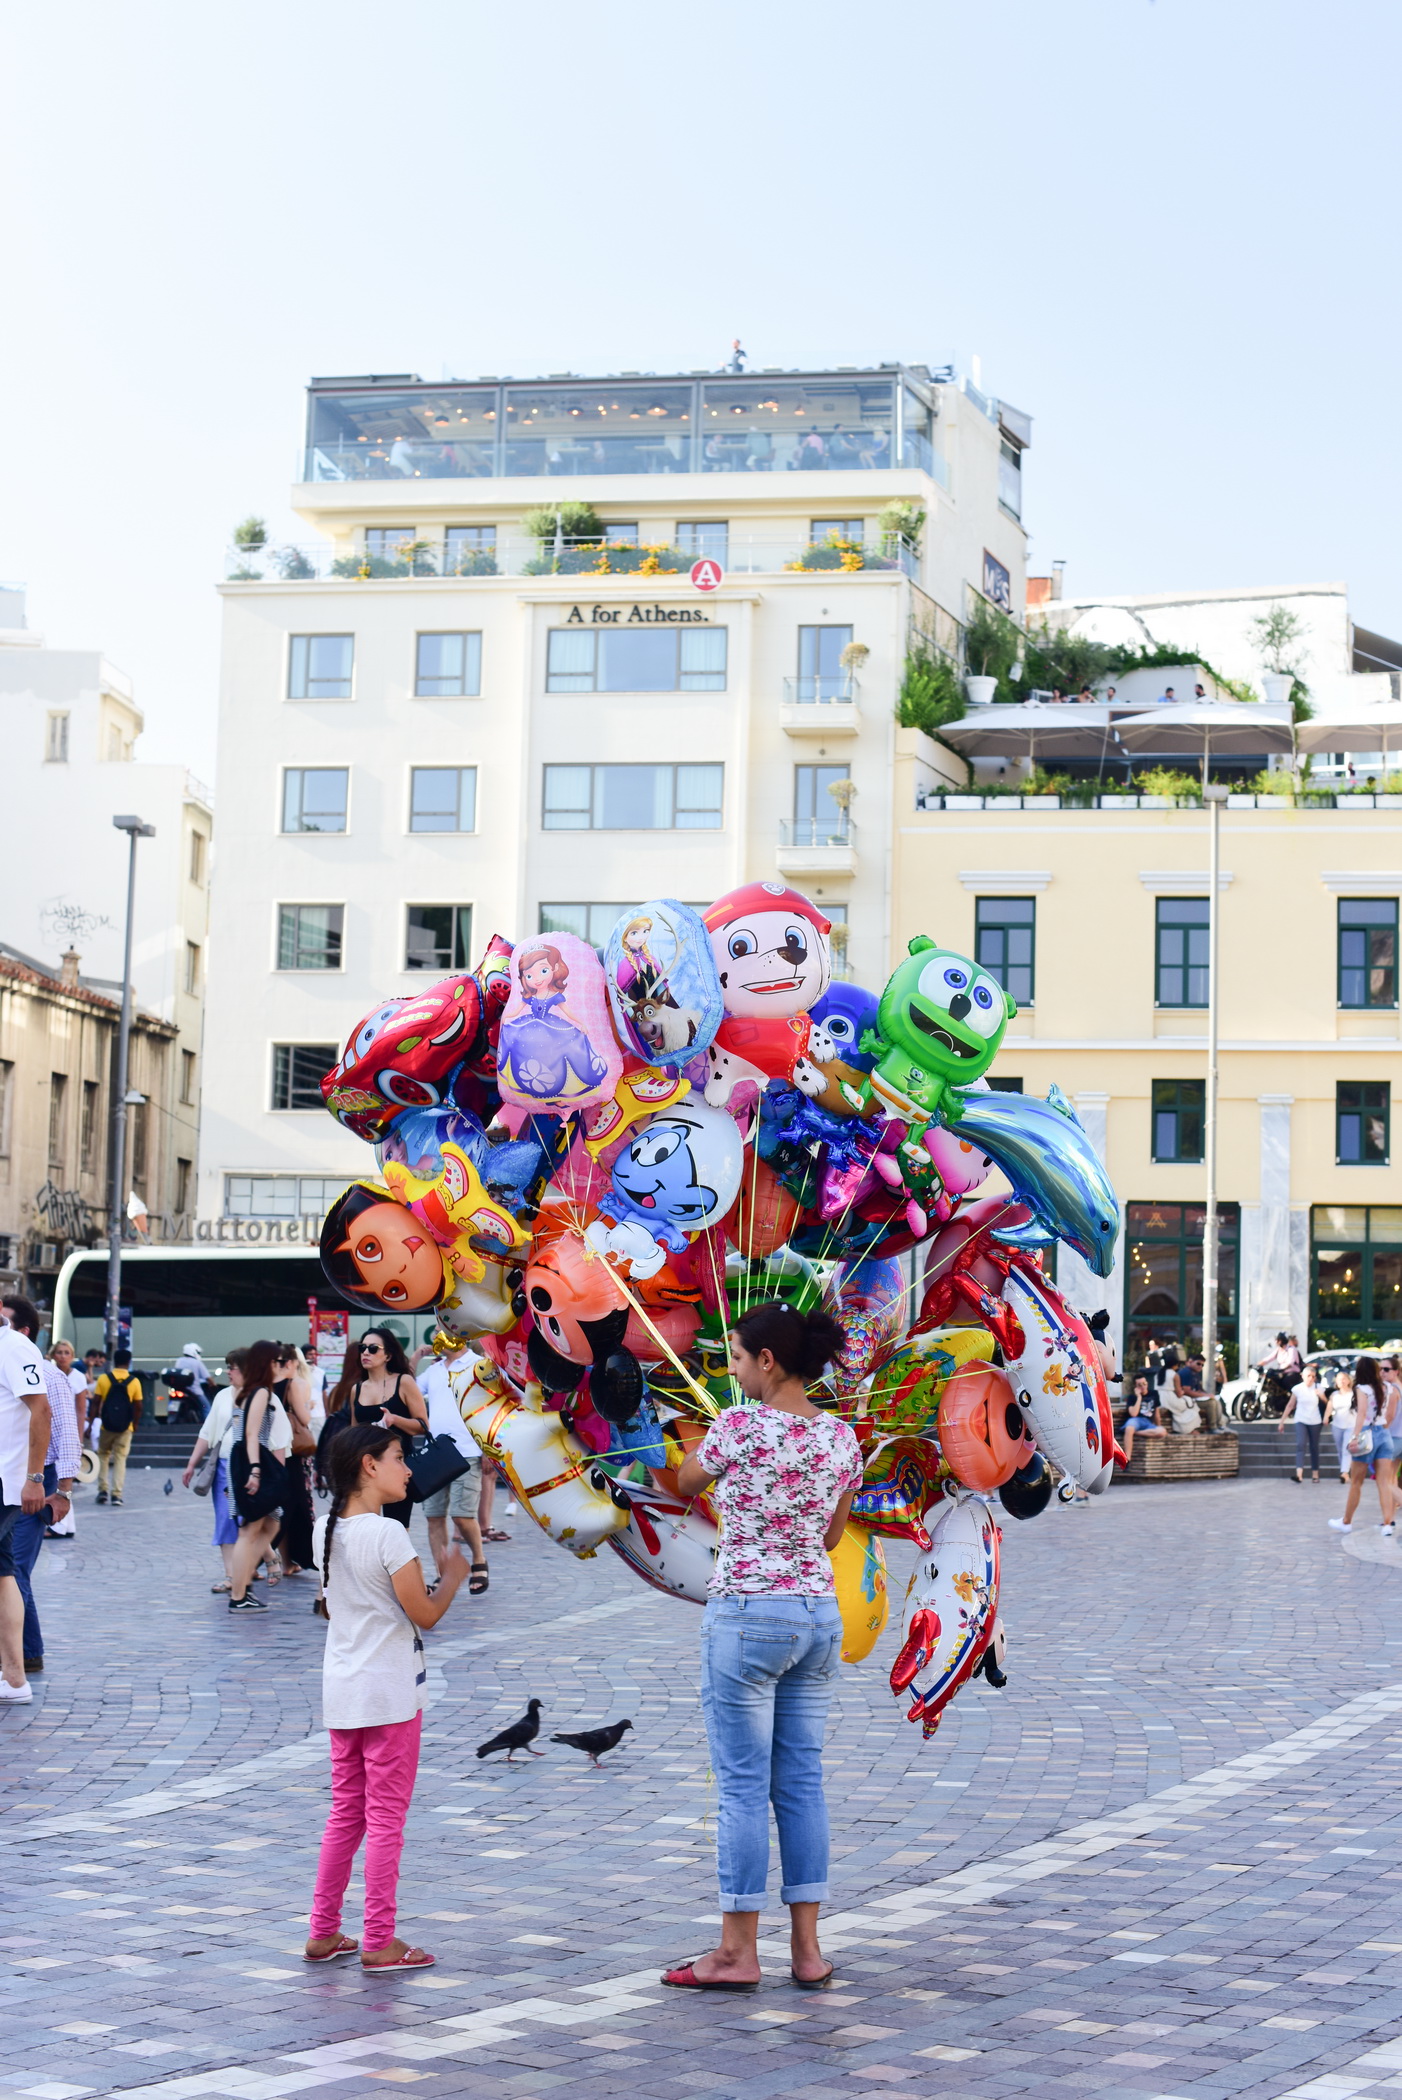 Athens city Balloon seller